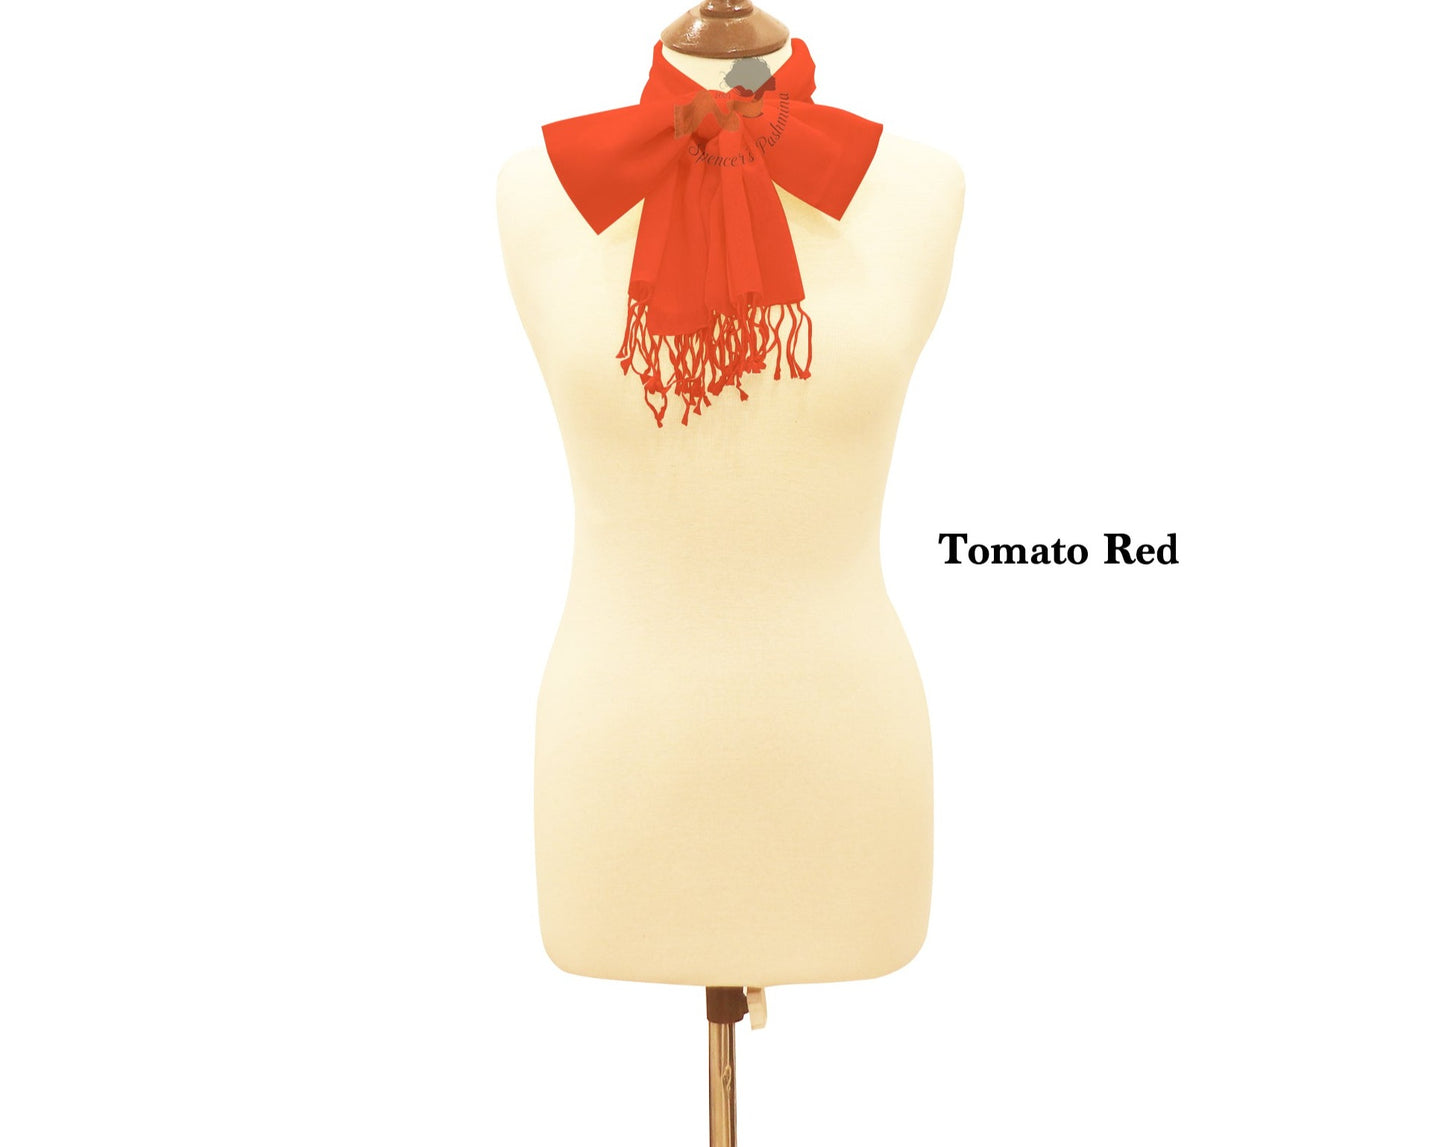 Tomato red scarf ring pashmina.